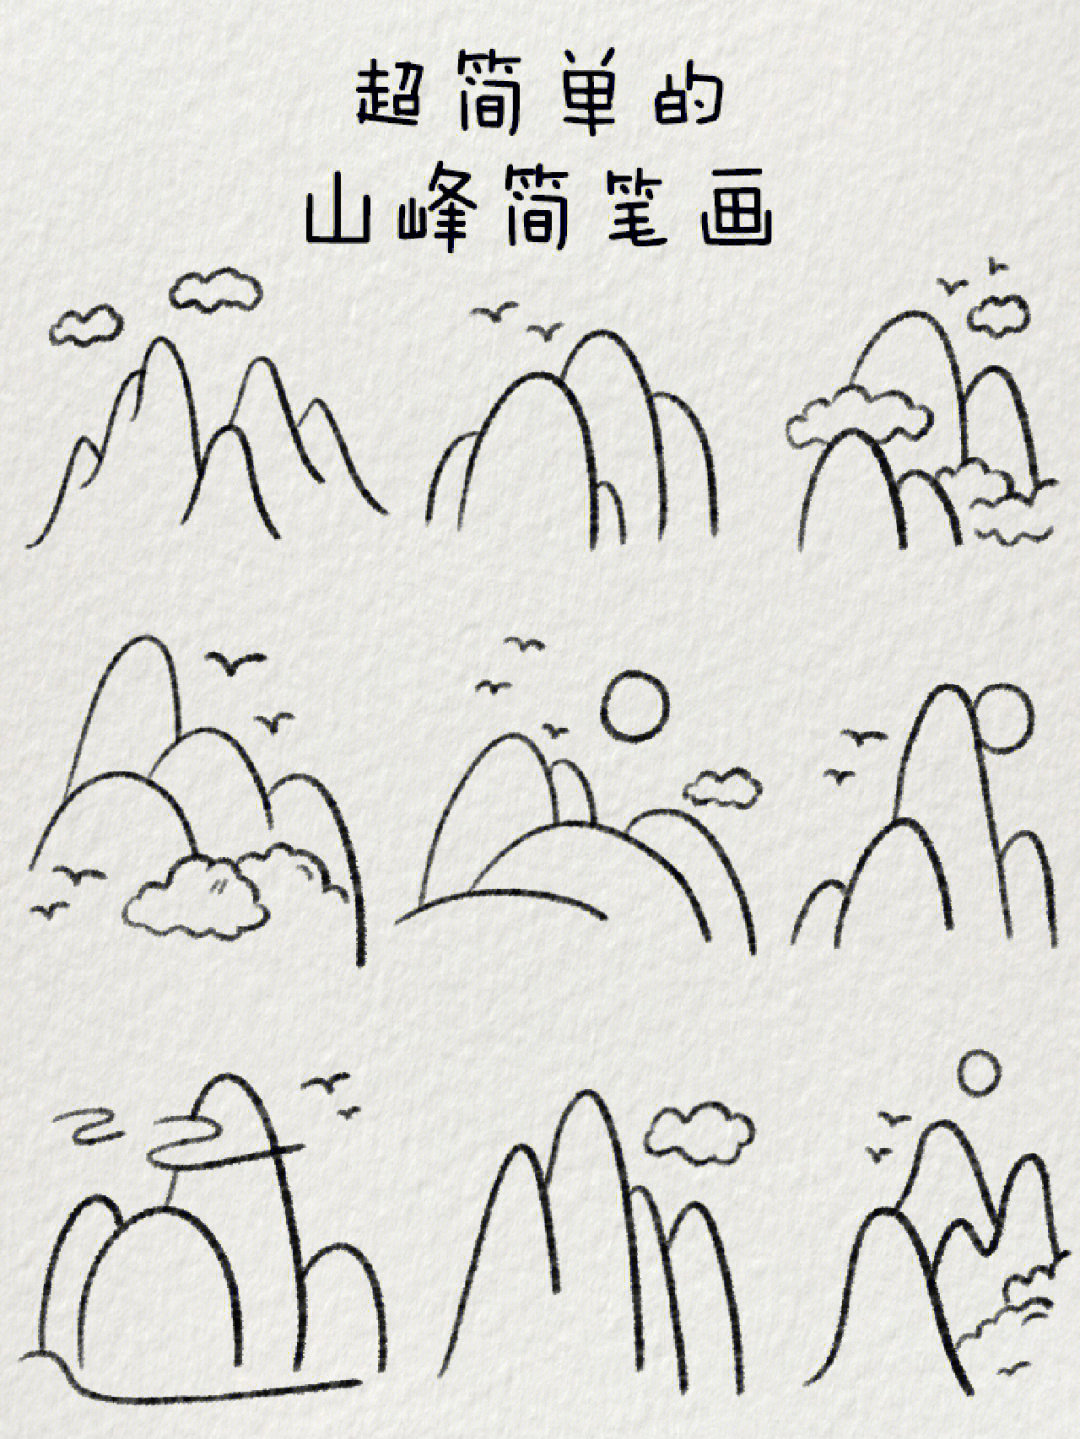 山峰的简笔画 画法图片